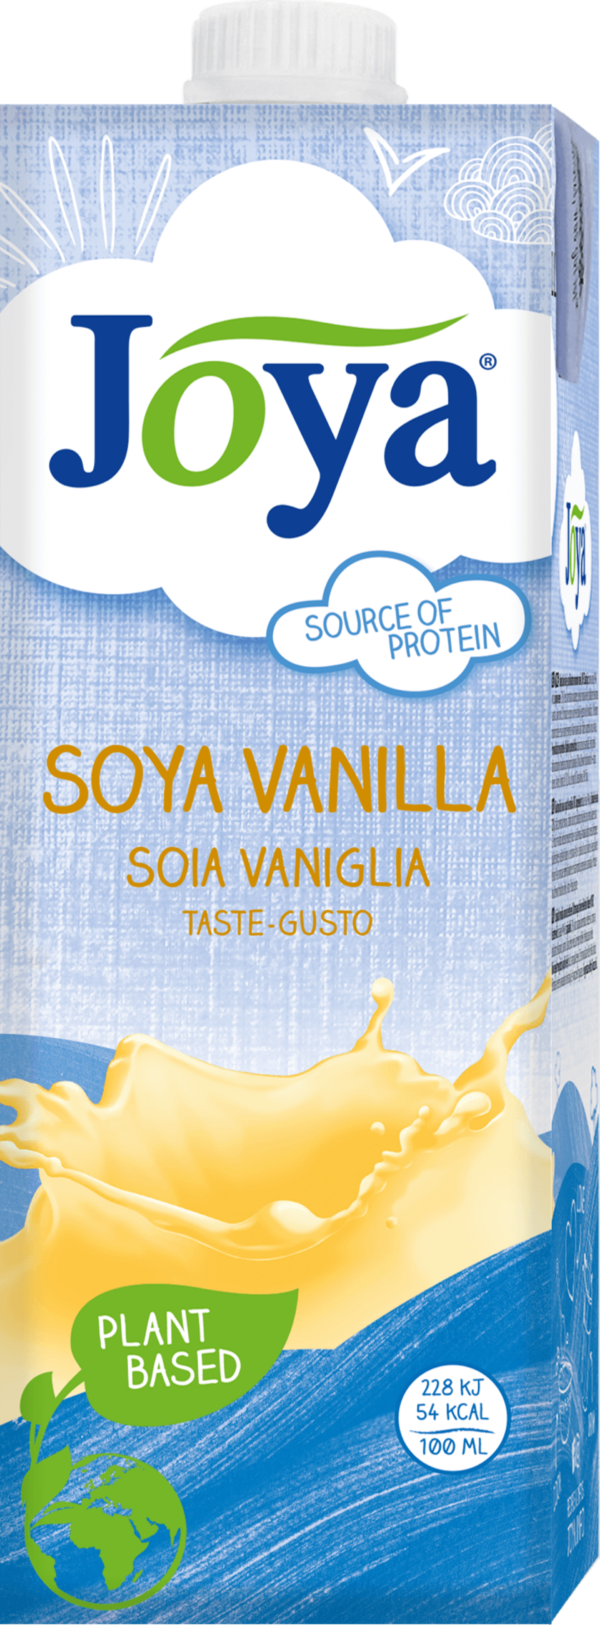 Joya Sójový vanilkový nápoj 1000 ml - Alternatíva mlieka a smotany - sojove mlieko - nemleko - sójové mlieko - sojové mlieko - alpro sojove mlieko - rastlinna smotana - rastlinne jogurty - sojove mlieko alpro - susene sojove mlieko - sojove mlieko v prasku - sojove mlieko zajac - sojove mlieko susene - rastlinne mlieko recept - susene sojove mlieko zajic - sojove mlieko chudnutie - zajic sojove mlieko - sojove mlieko do kavy - rastlinný nápoj